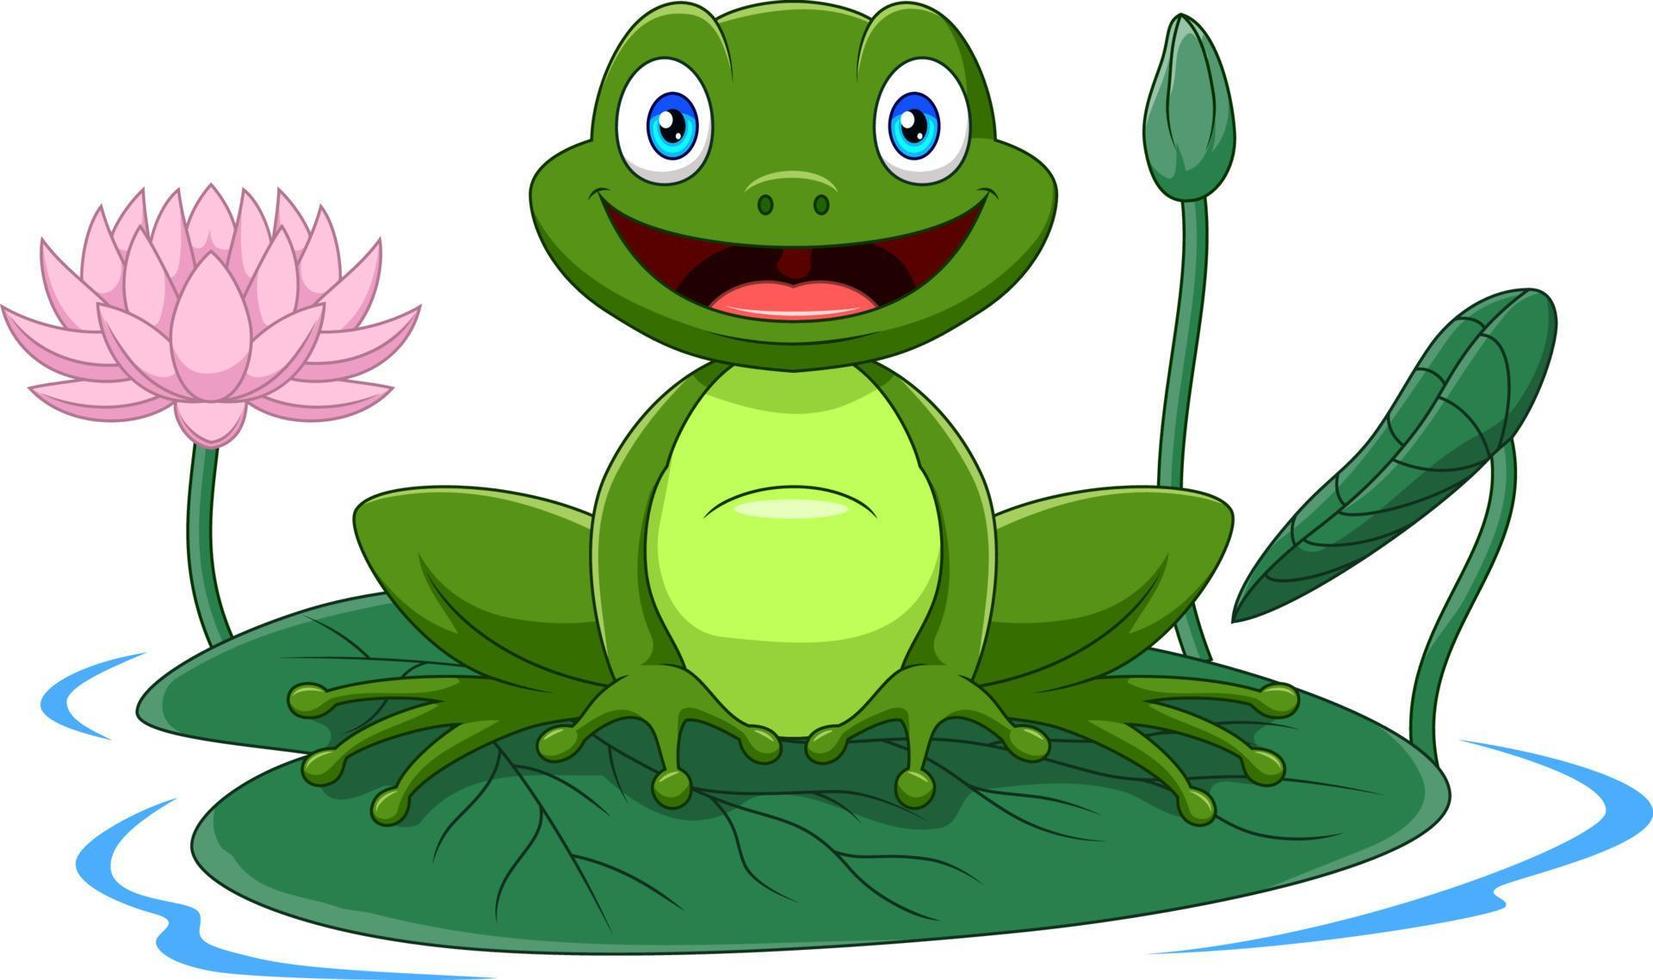 Cartoon green frog sitting on a leaf vector